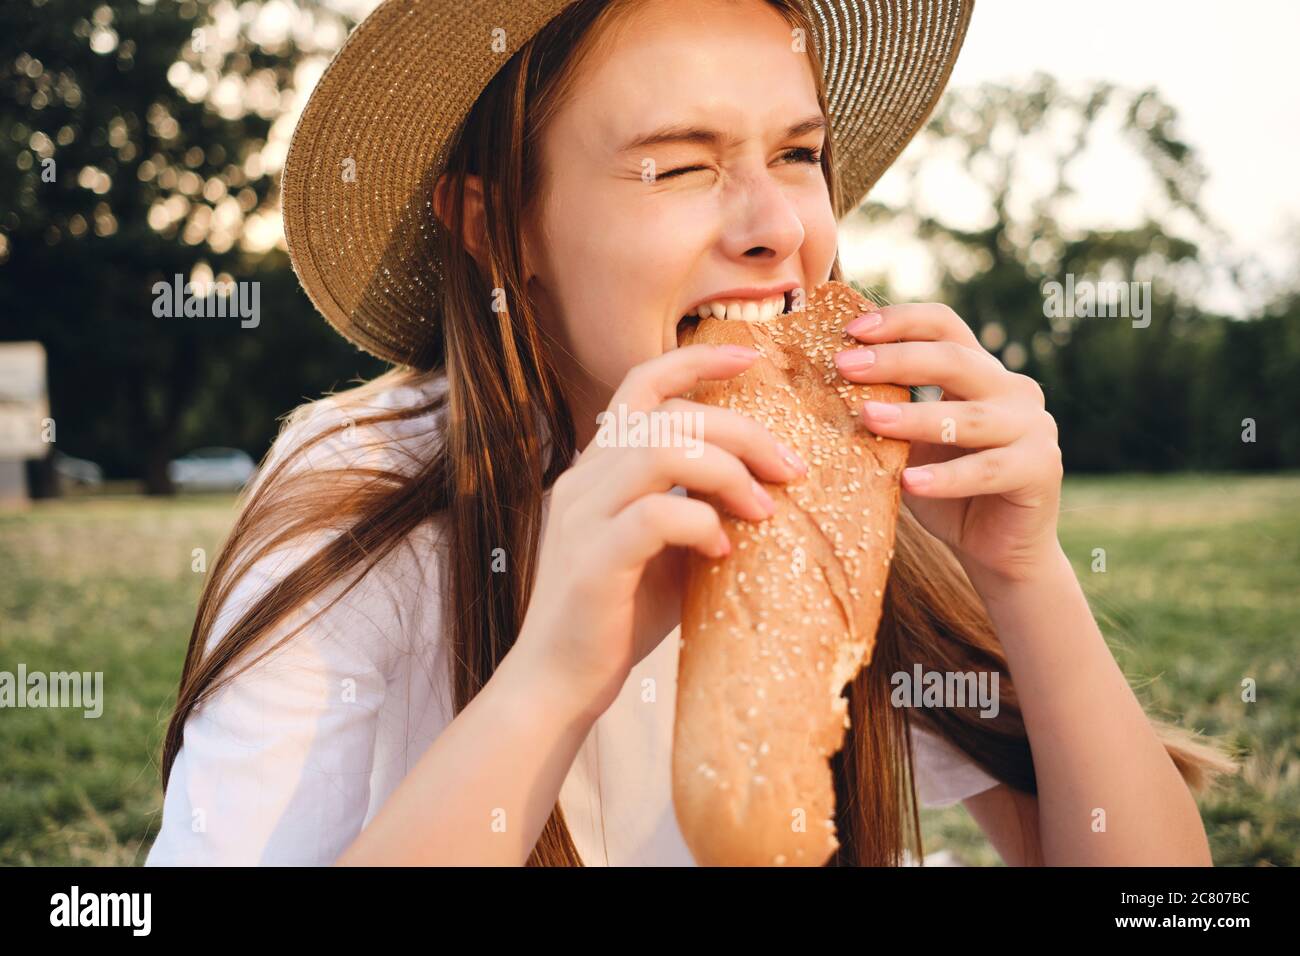 Retrato Da Menina Apaixonado Que Come O Bacon Do Queijo Imagem de Stock -  Imagem de adulto, forma: 56160175